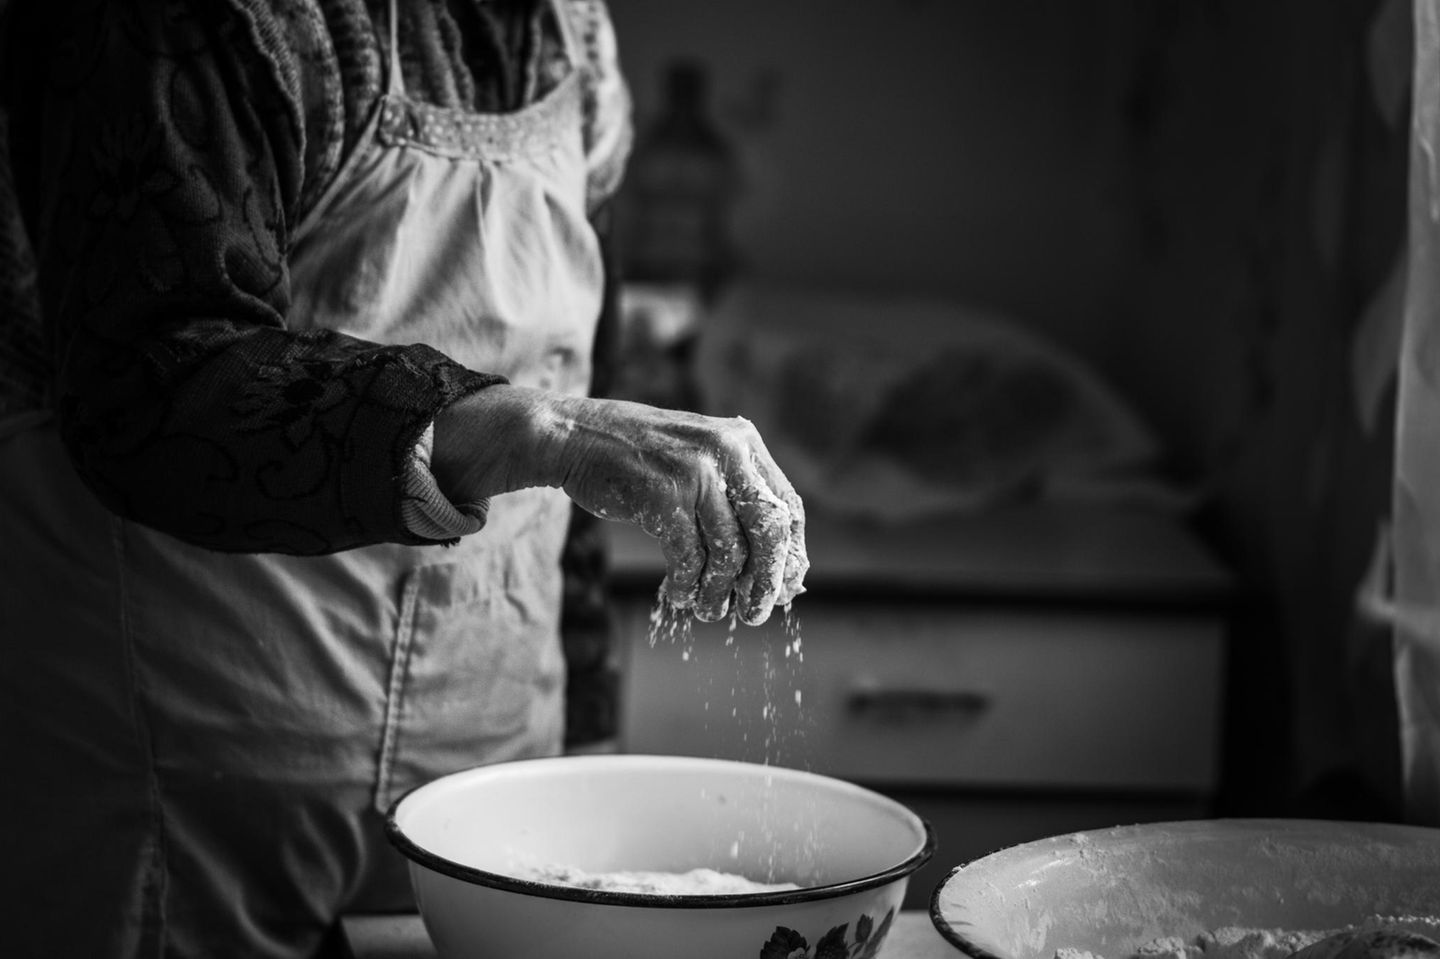 Omas Küchentipps: Eine Hand streut Mehl in den Teig